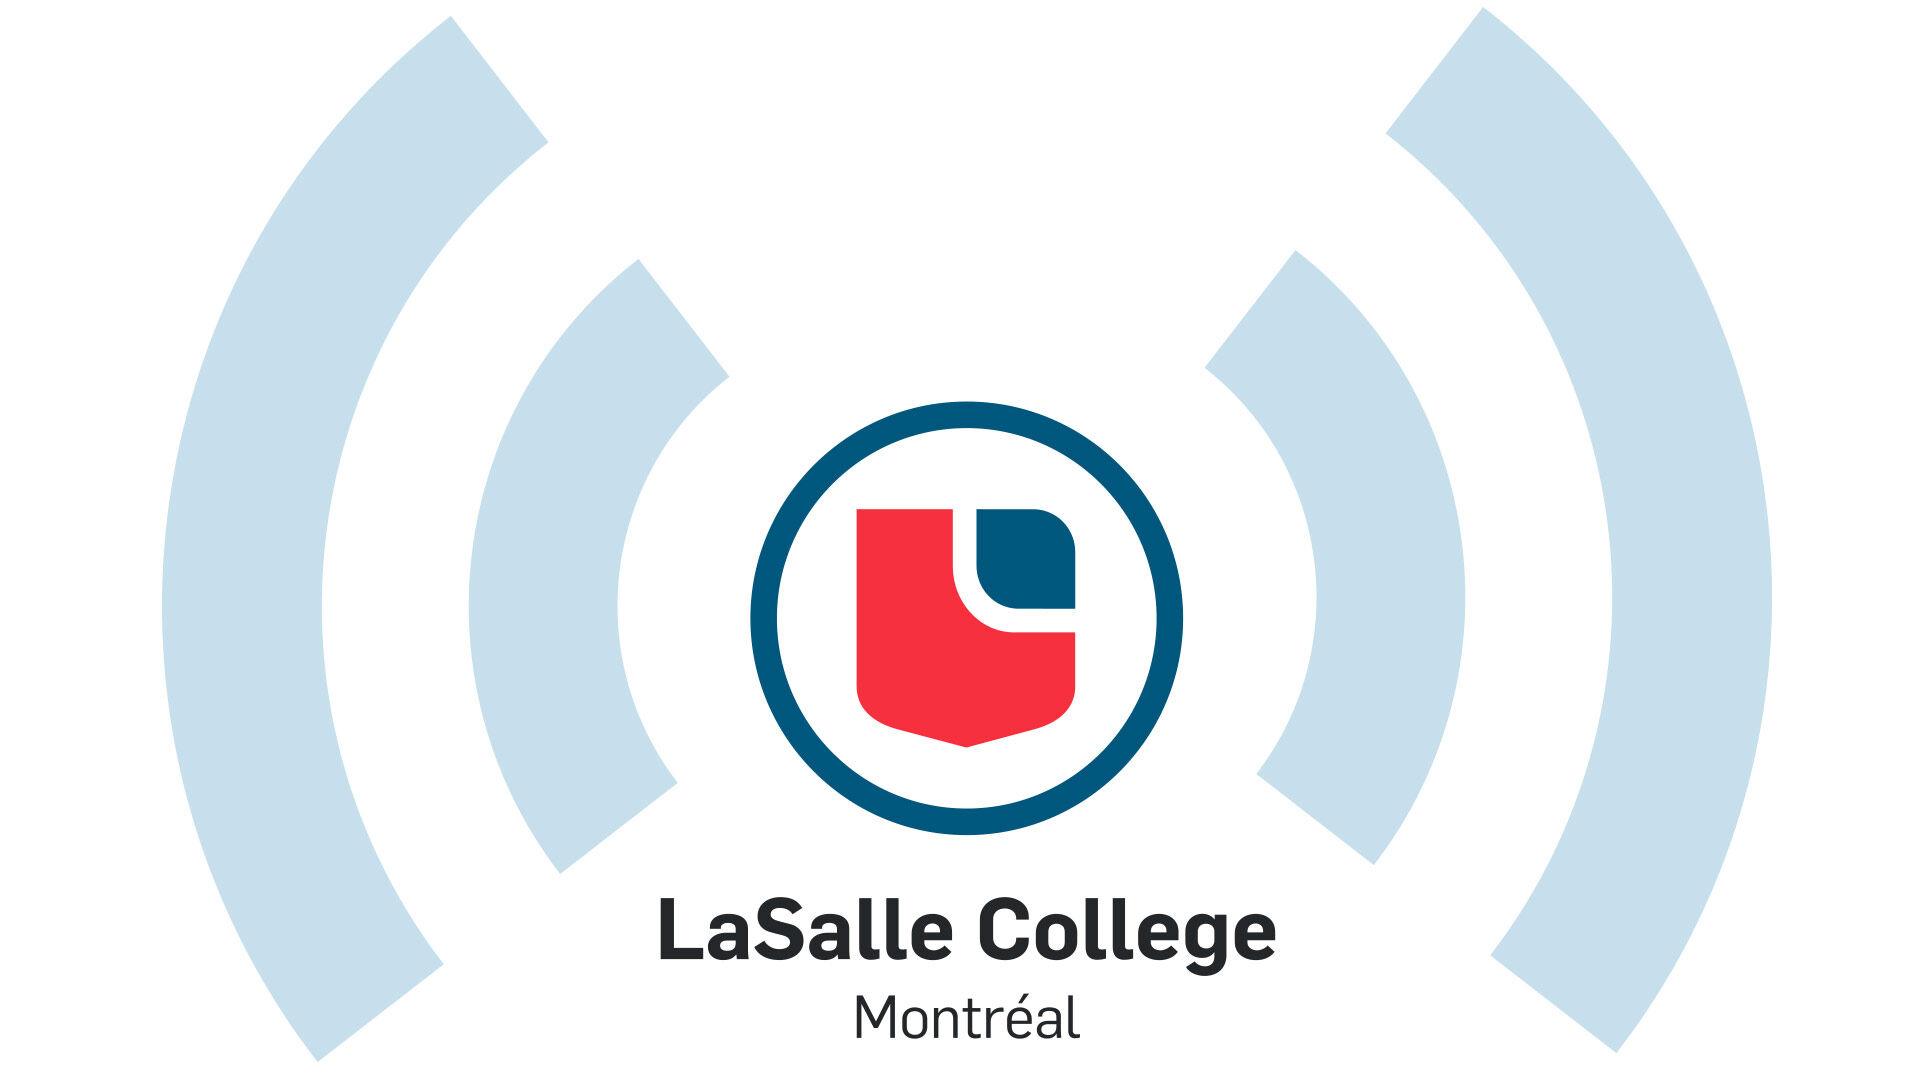 Logo du Collège LaSalle Montréal, avec un 'L' stylisé en rouge et bleu dans un cercle, entouré de lignes courbes.